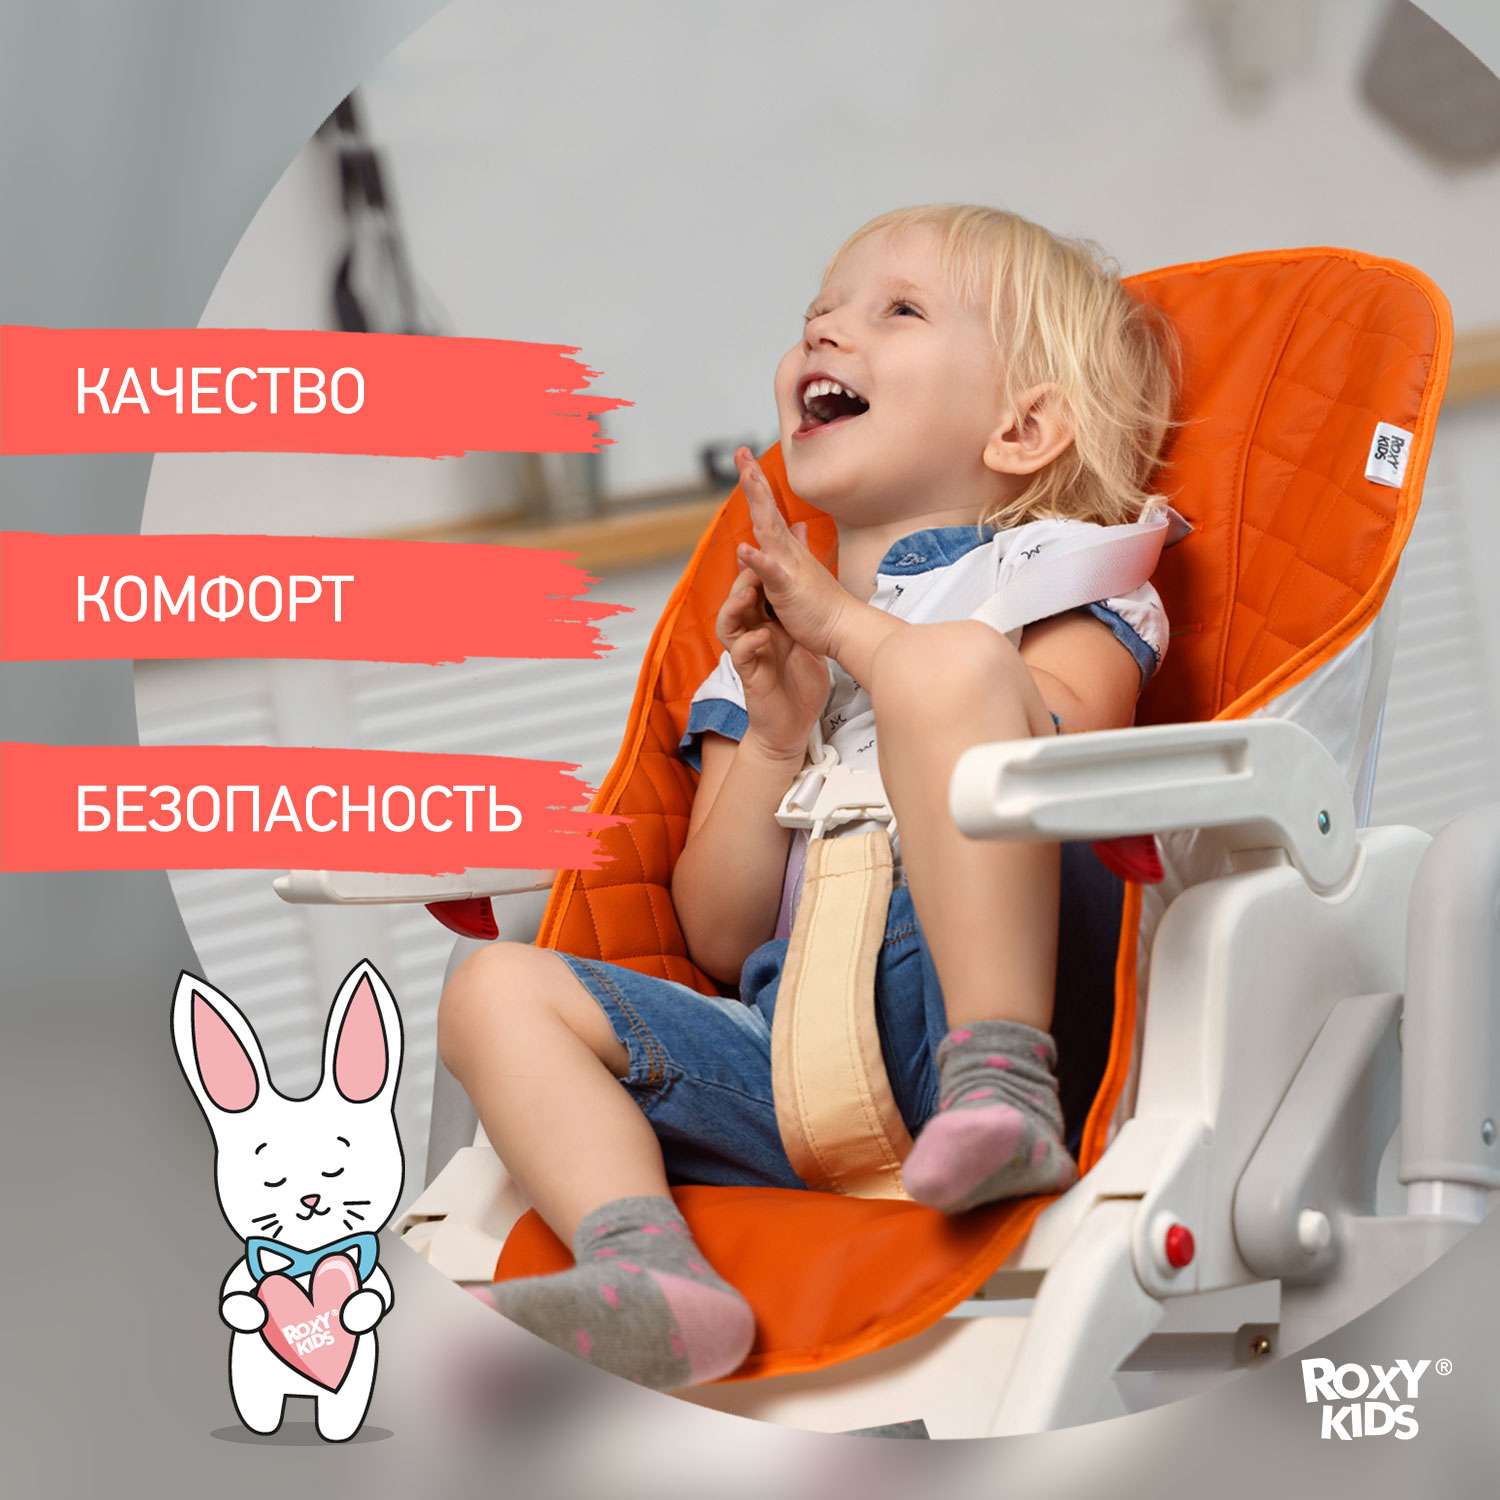 Чехол универсальный ROXY-KIDS на детский стульчик для кормления оранжевый - фото 2